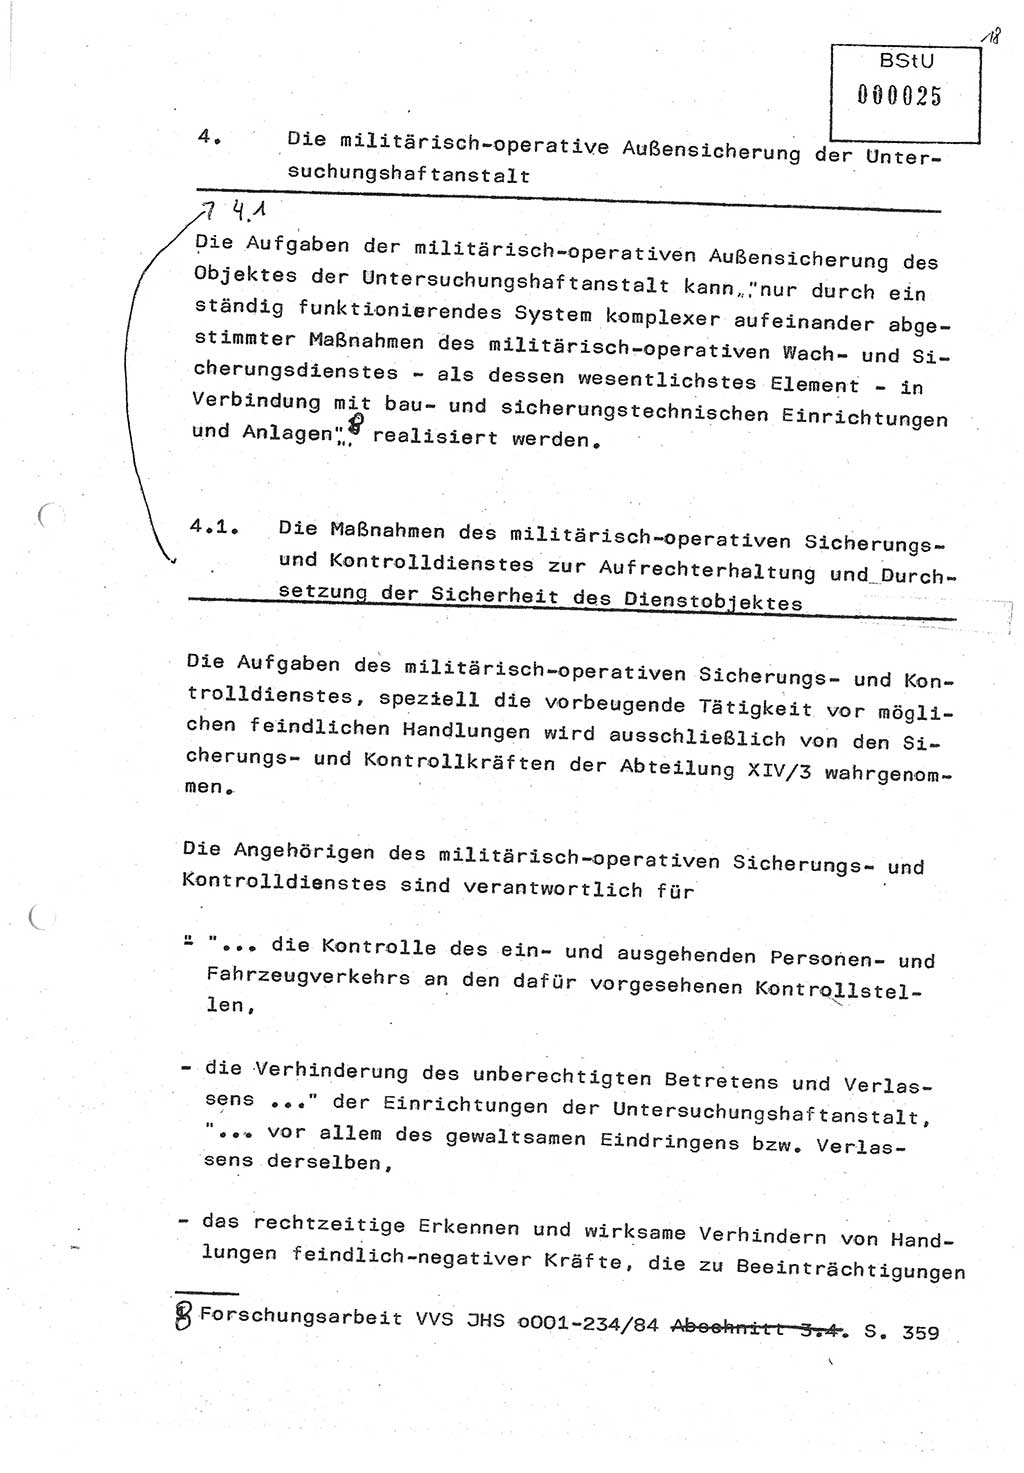 Diplomarbeit (Entwurf) Oberleutnant Peter Parke (Abt. ⅩⅣ), Ministerium für Staatssicherheit (MfS) [Deutsche Demokratische Republik (DDR)], Juristische Hochschule (JHS), Geheime Verschlußsache (GVS) o001-98/86, Potsdam 1986, Seite 25 (Dipl.-Arb. MfS DDR JHS GVS o001-98/86 1986, S. 25)